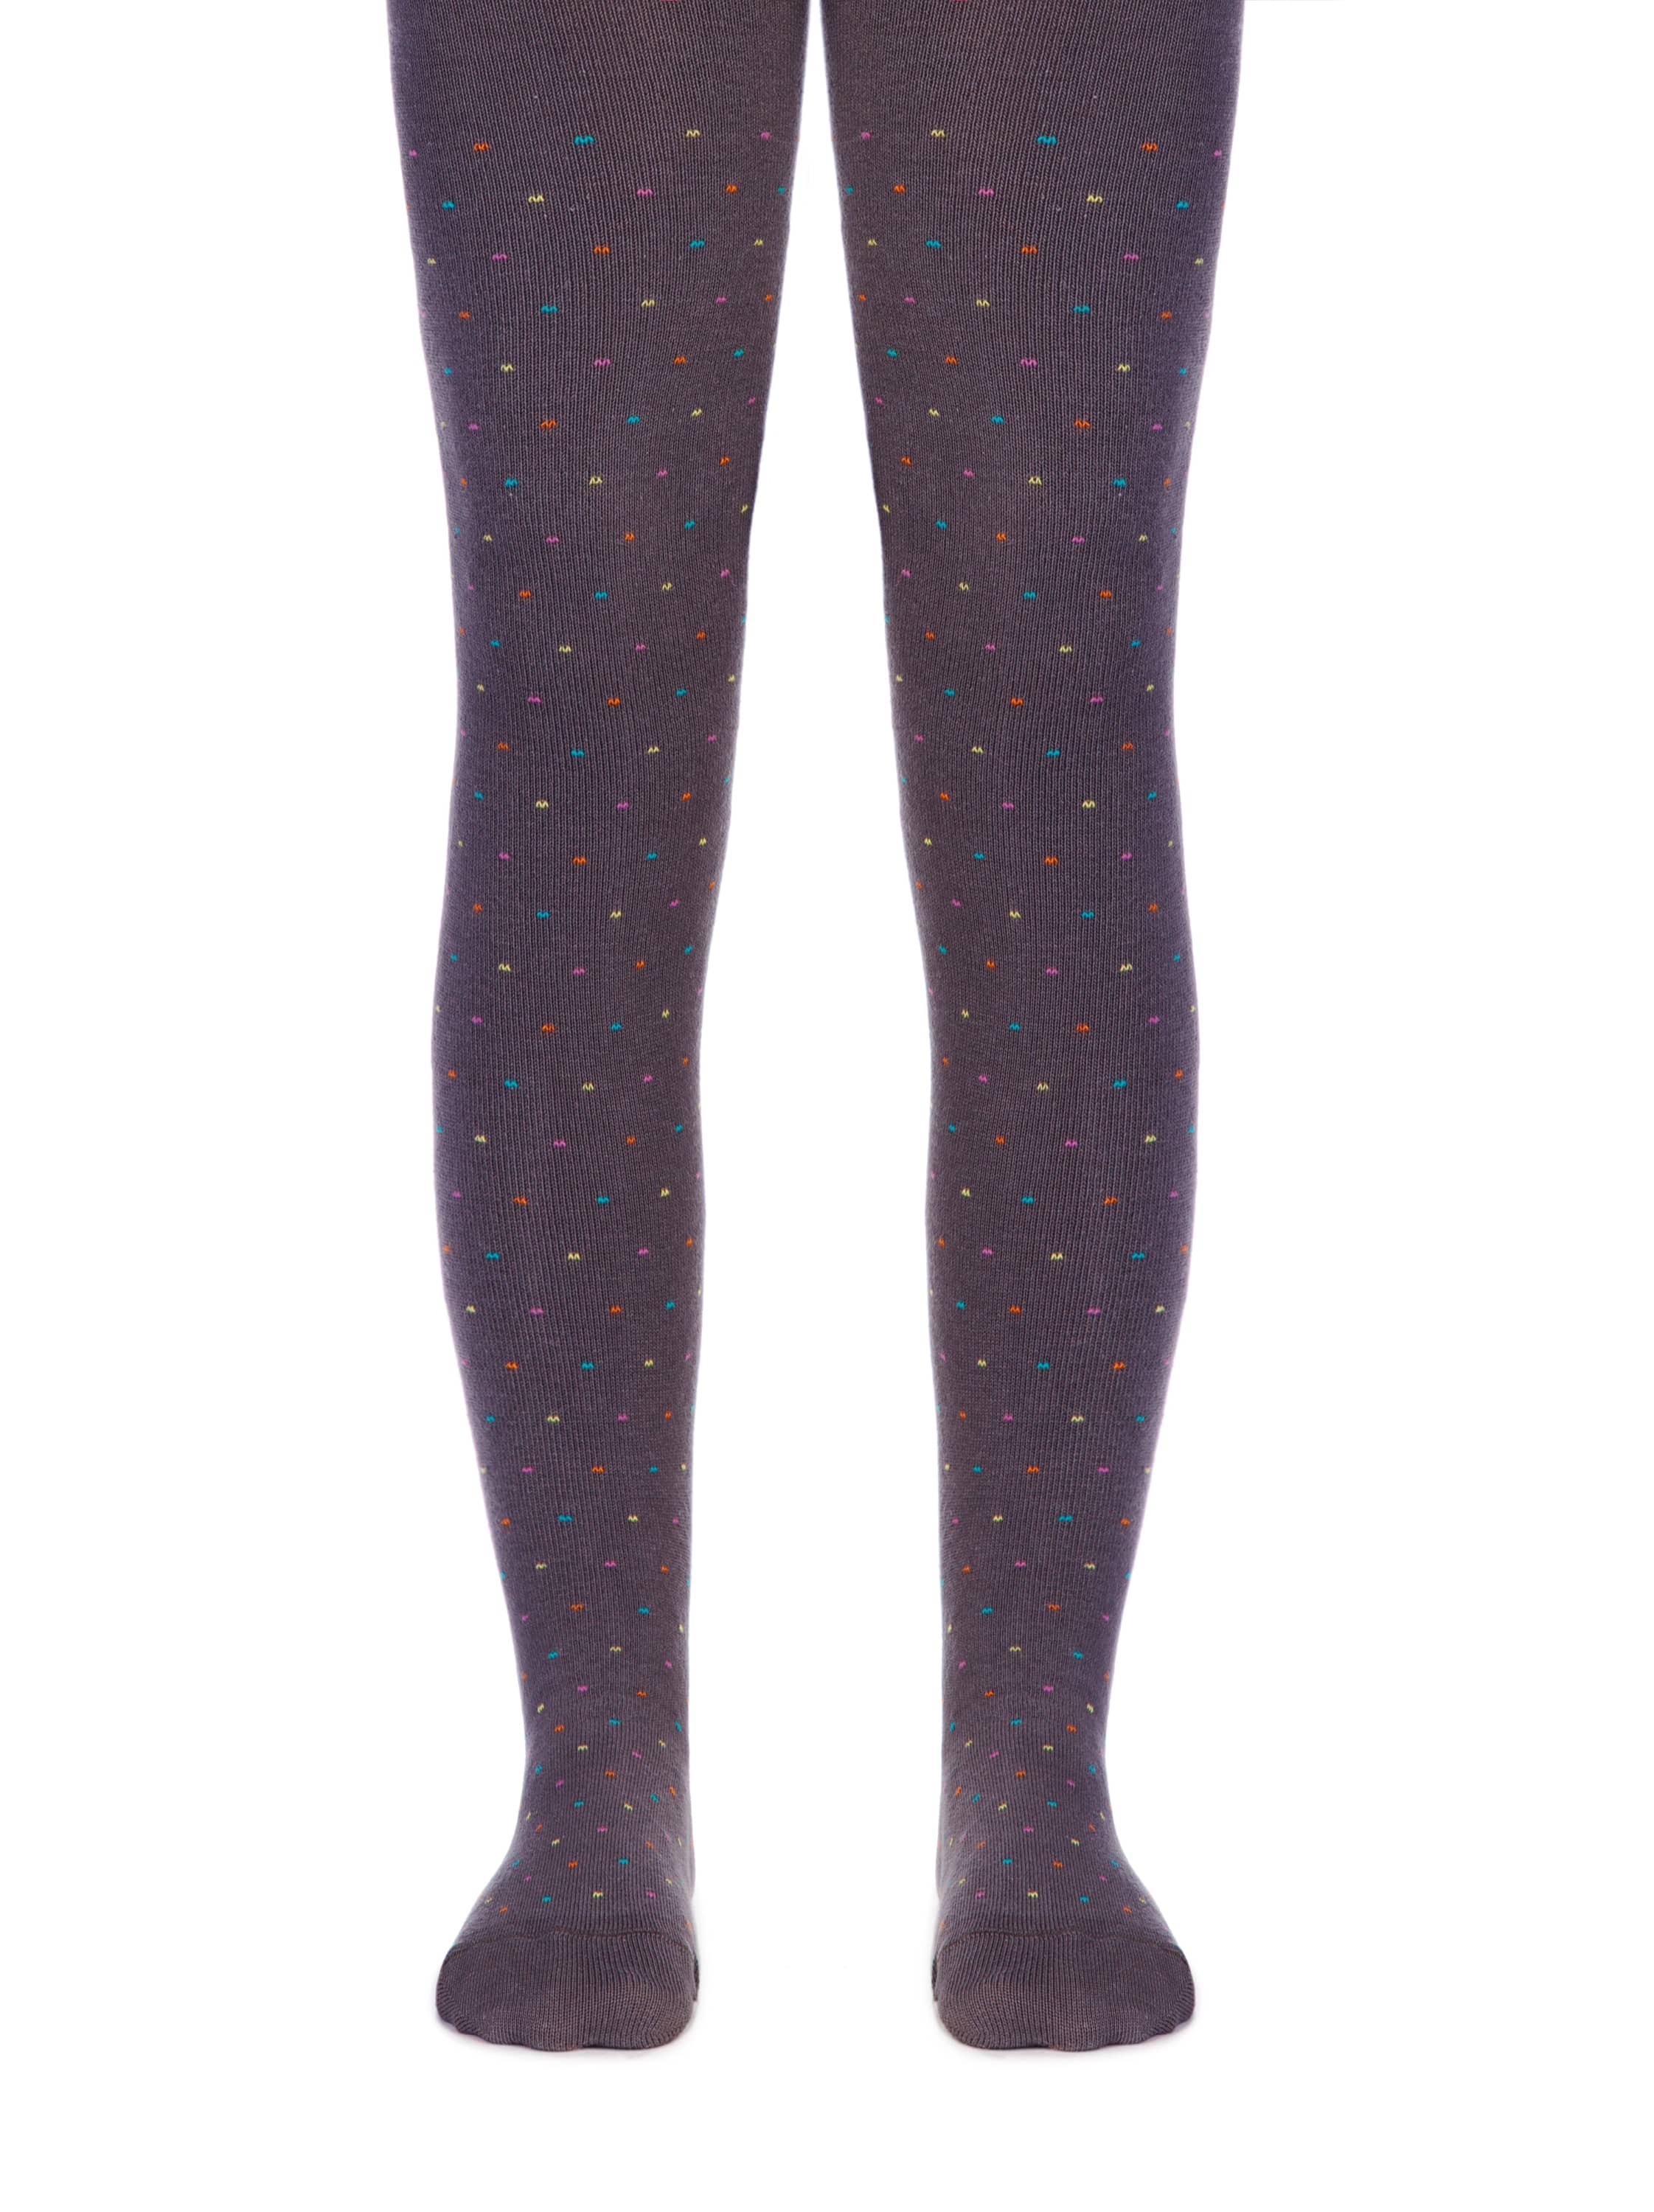 Otroške hlačne nogavice iz bombaža v sivi barvi s pikčastim vzorcem po hlačnici primerne za punčke Conte Barvaste Pikice